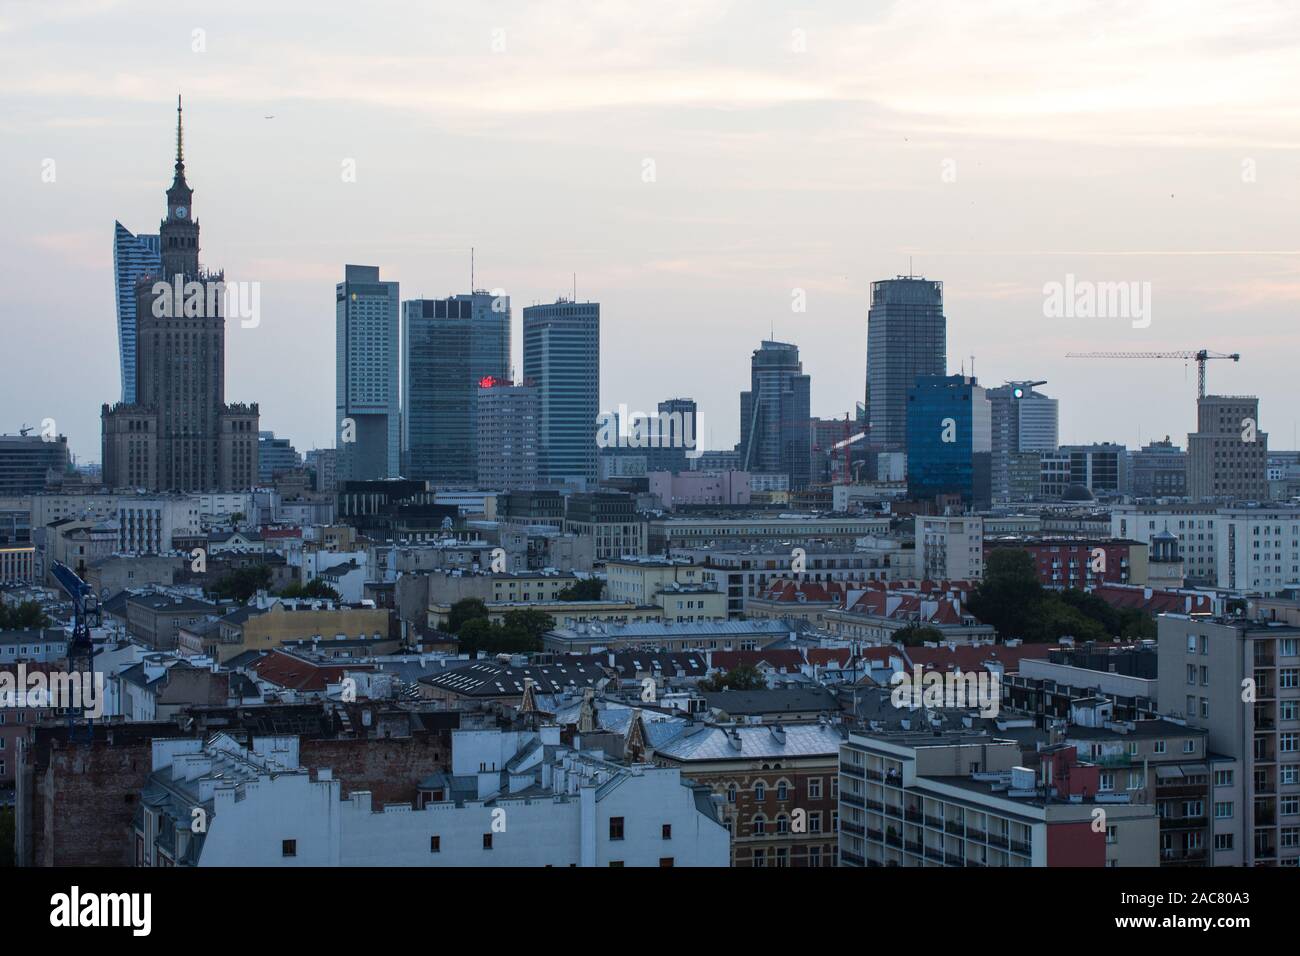 View of Warsaw, Poland Stock Photo